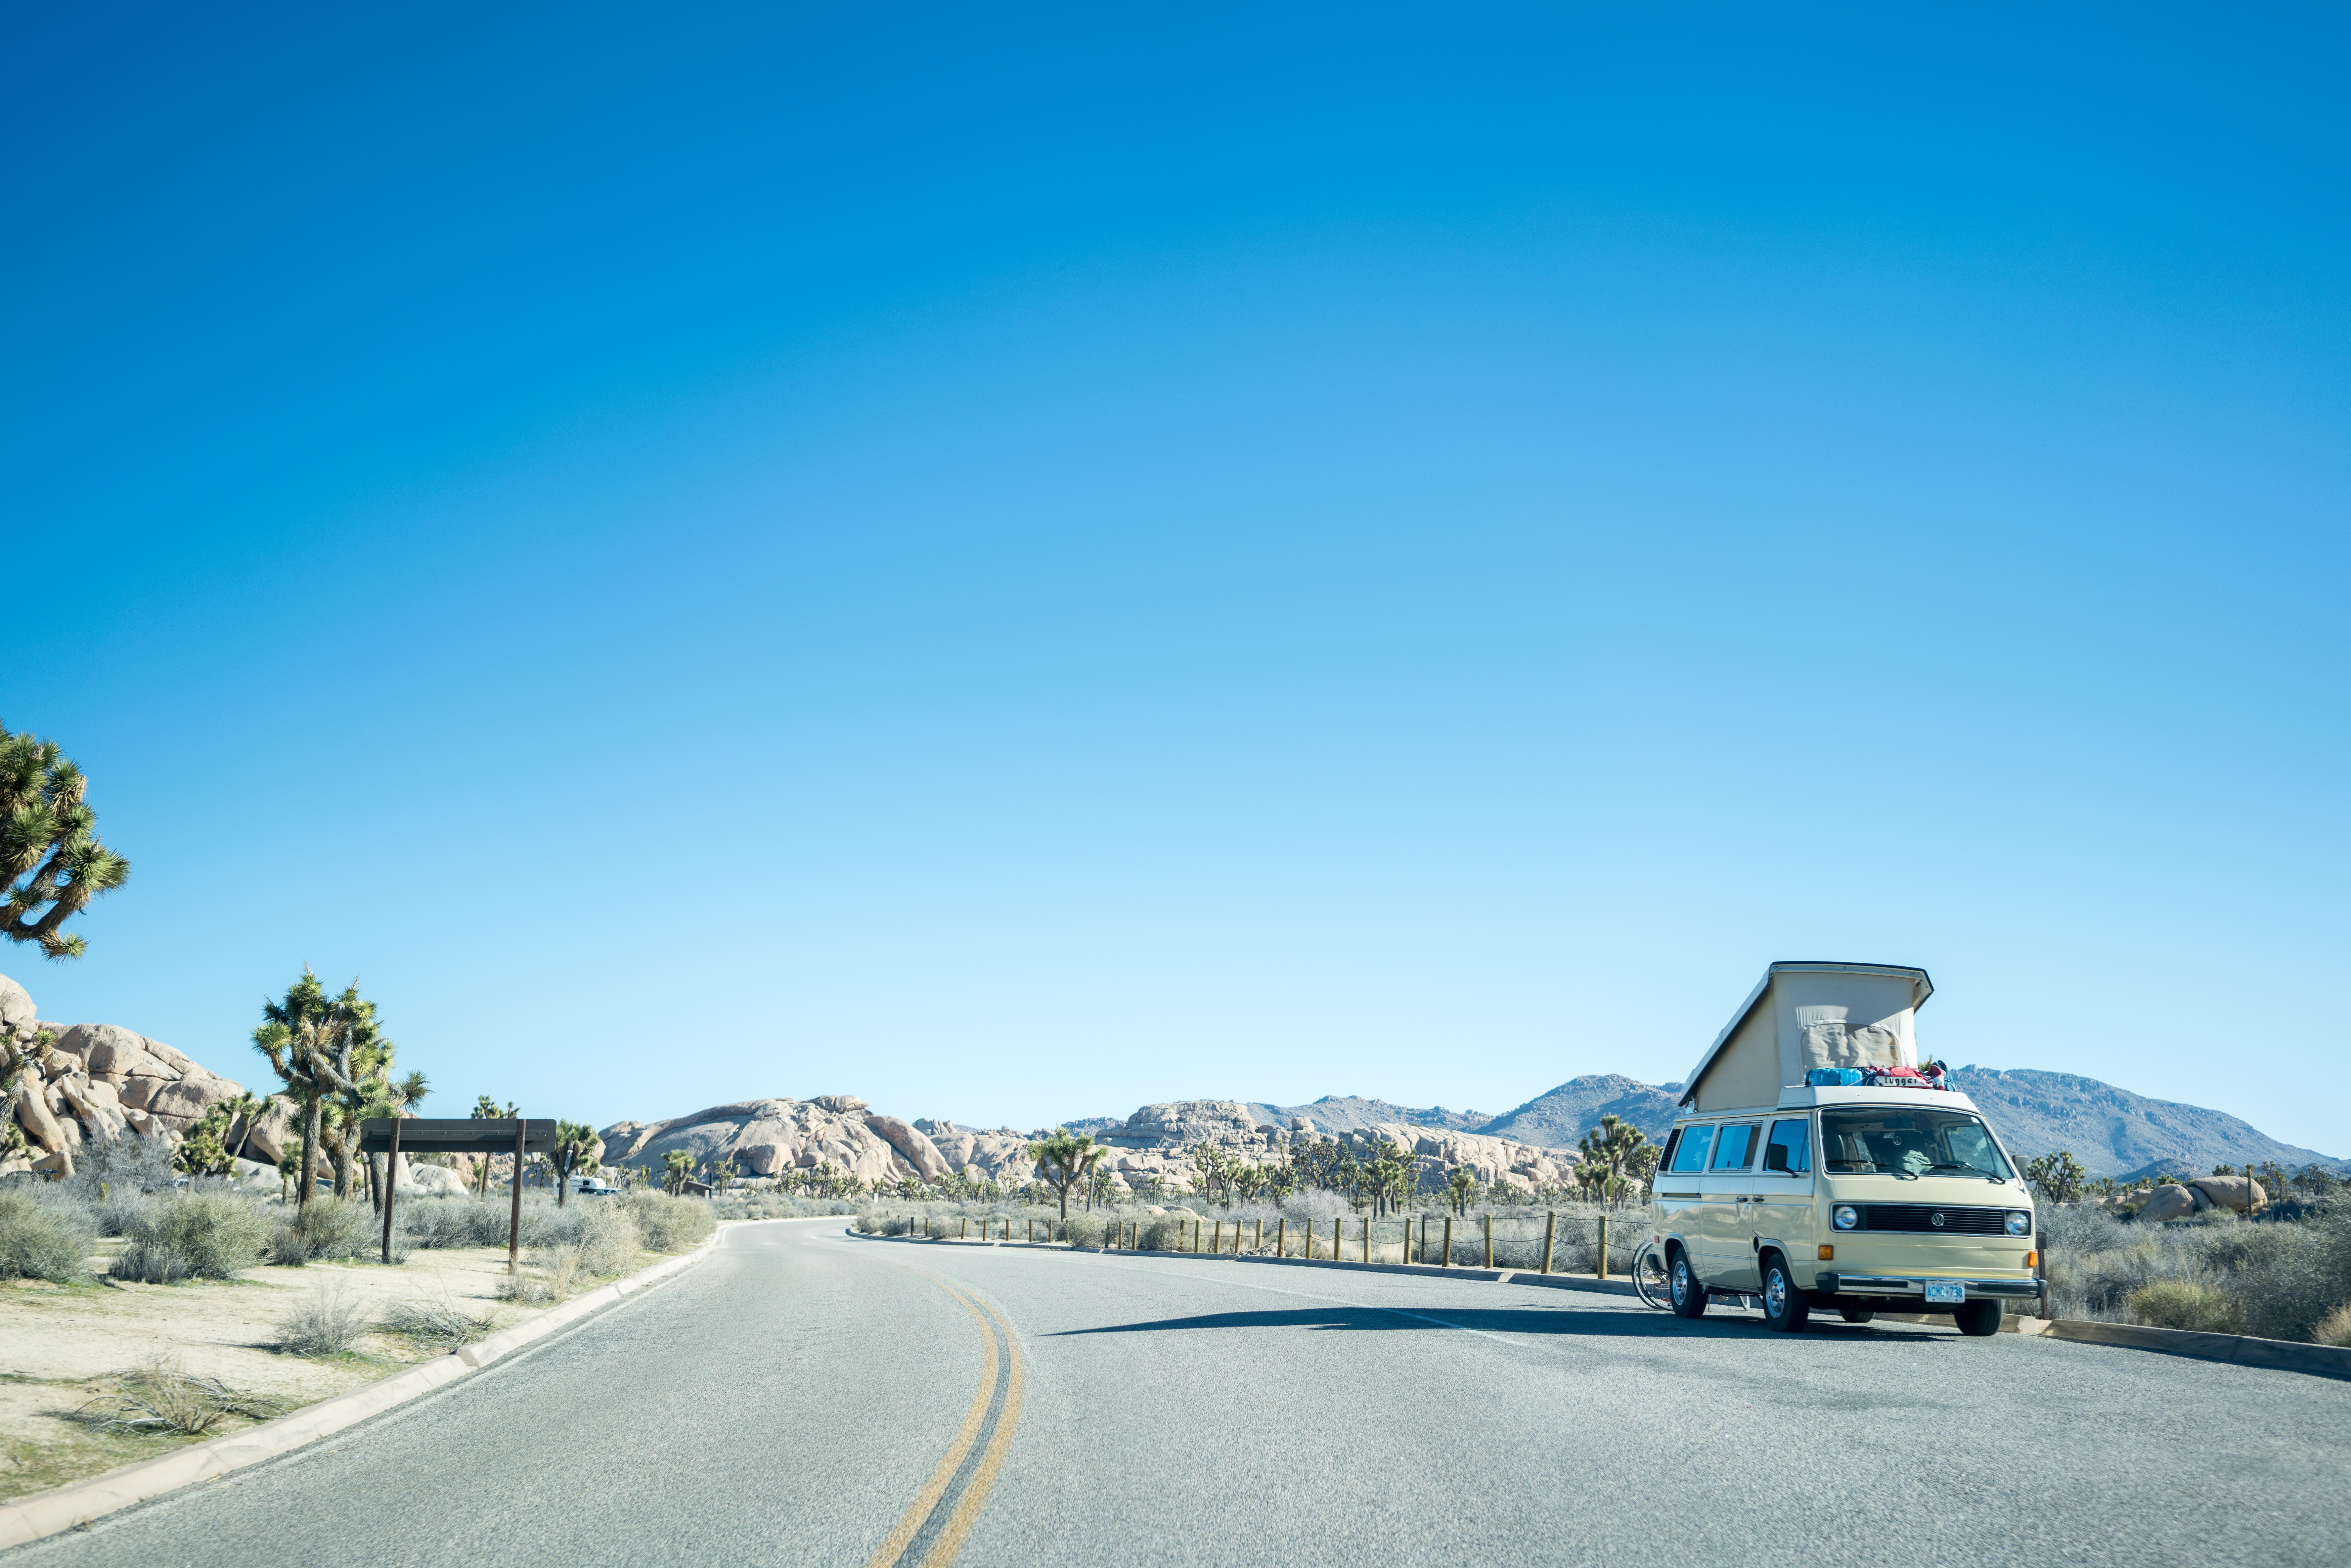 General 7000x4669 road Volkswagen desert mountains clear sky blue Ontario Volkswagen Transporter car Van